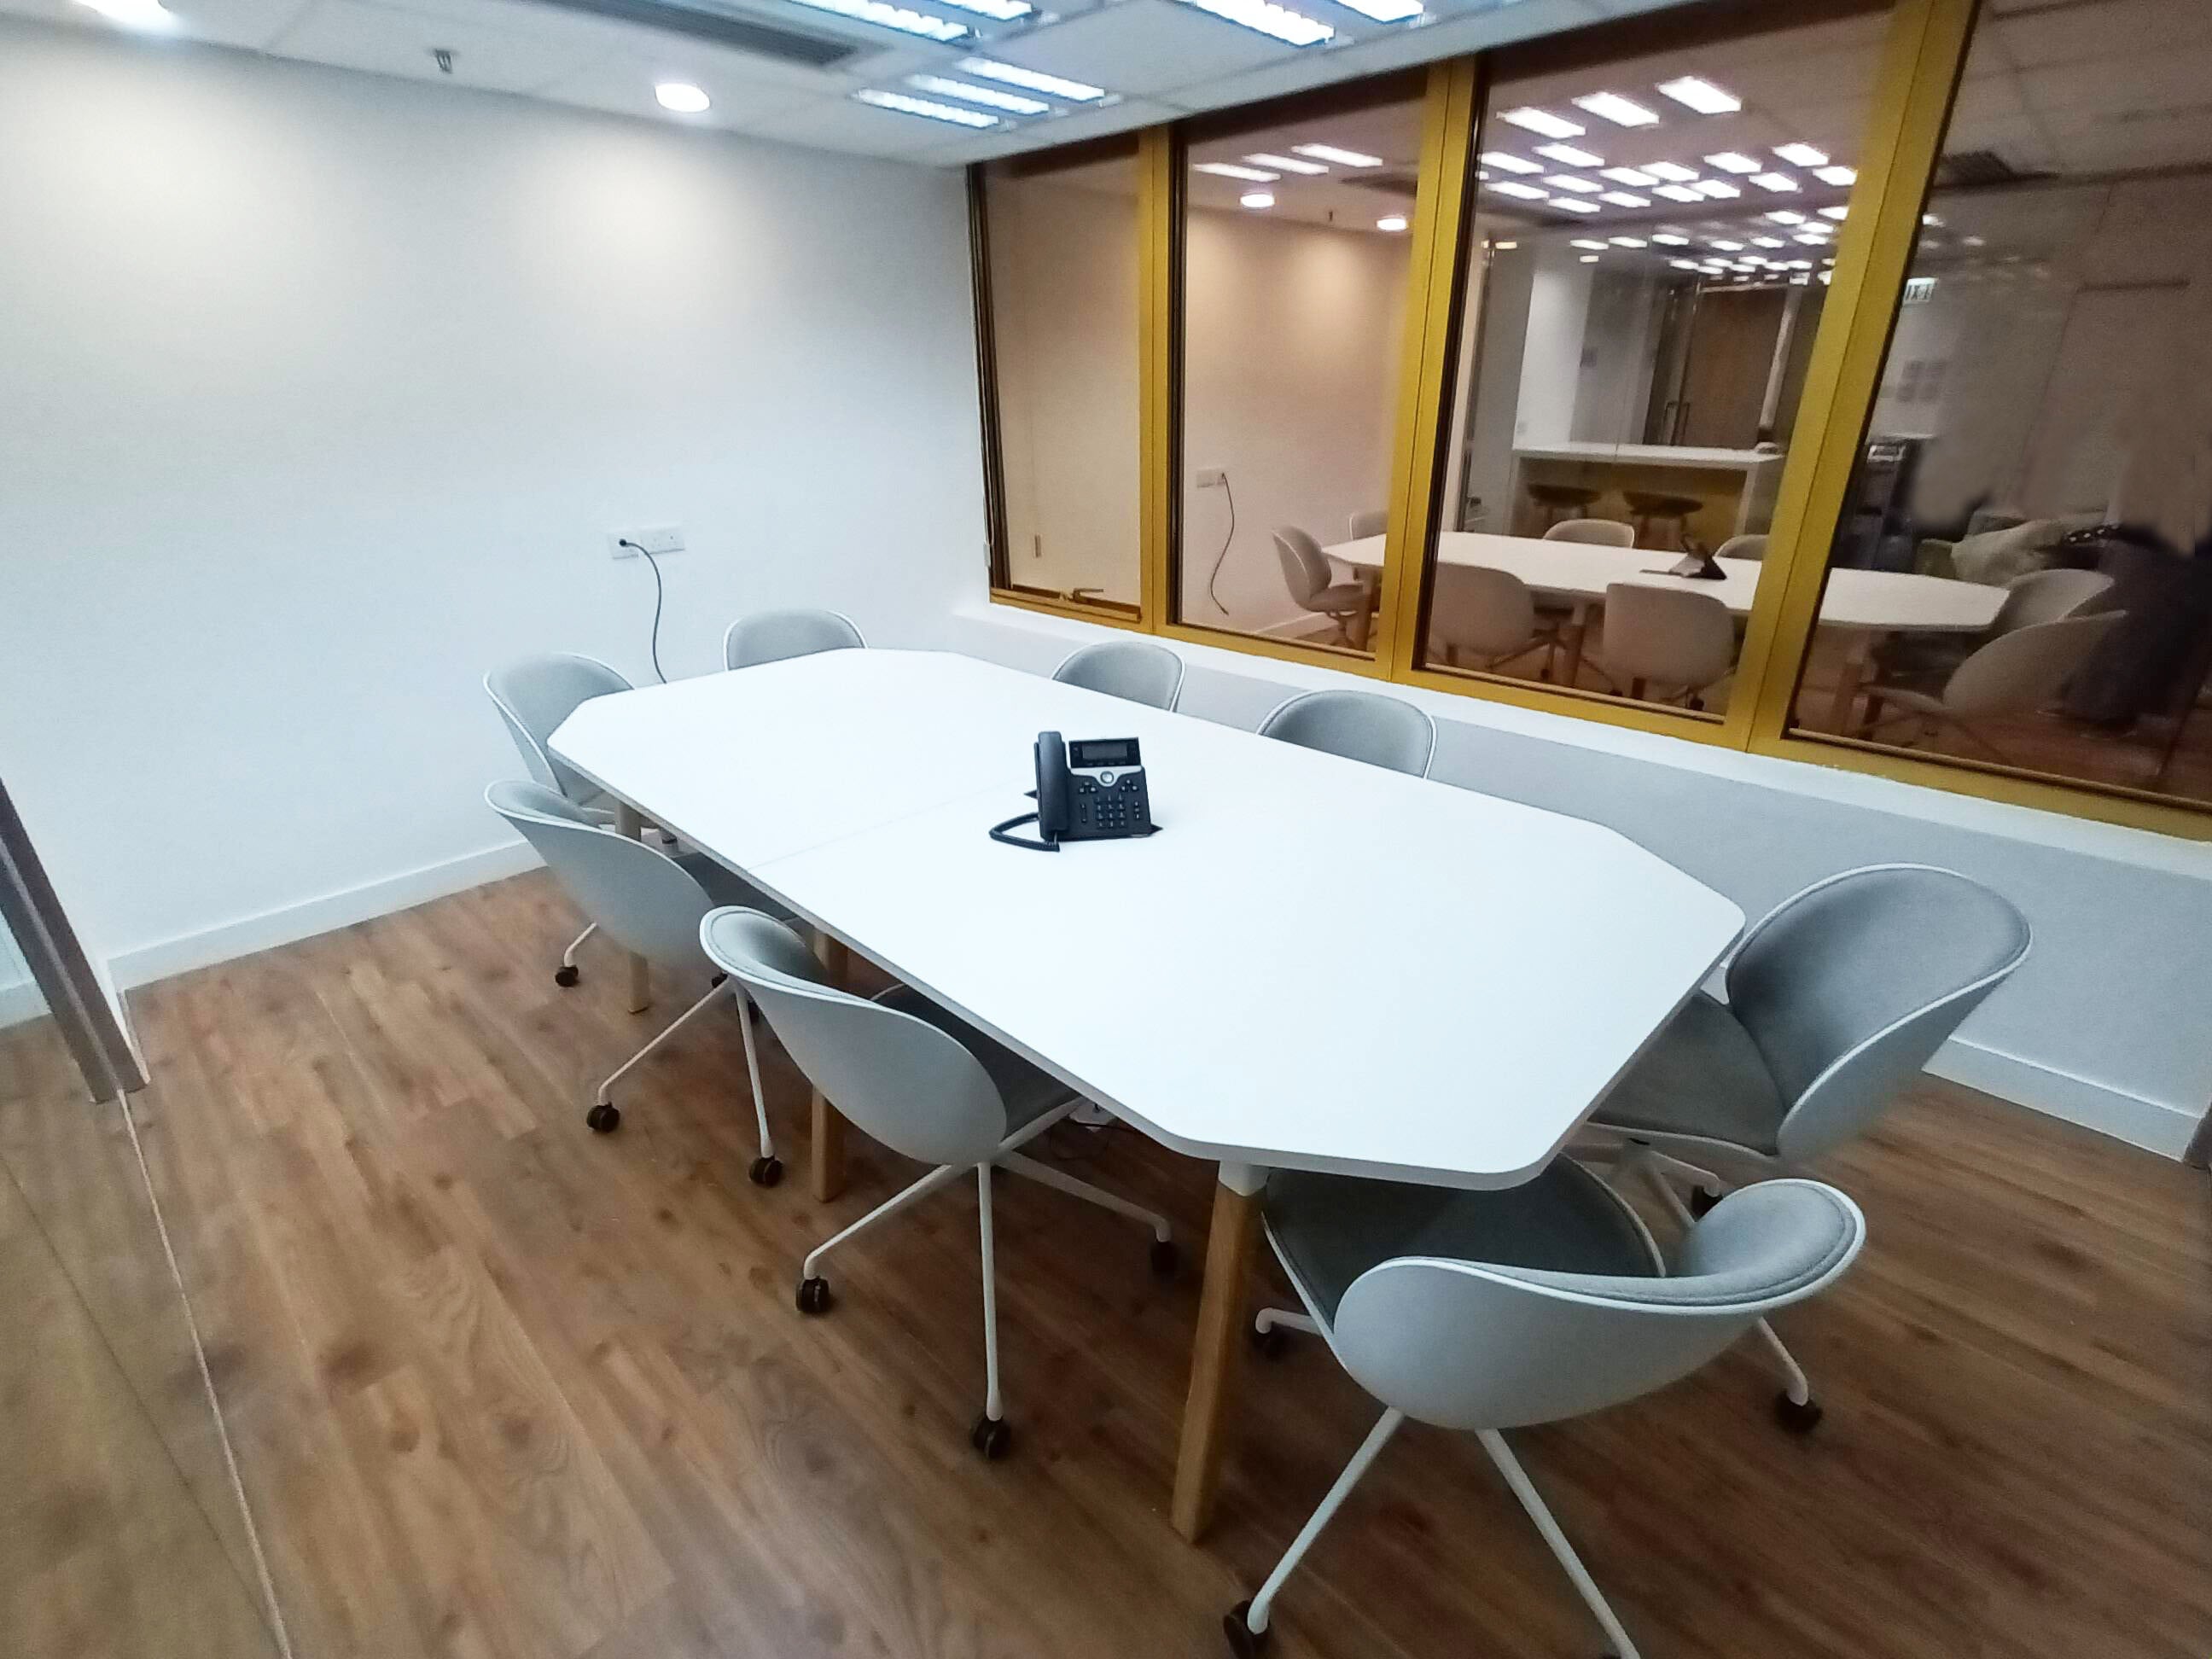 八角型會議枱, 白色會議枱, 訂做會議枱, 8人會議枱, 會議臺, meeting room table, small meeting room table, custom conference room table, meeting room cable management